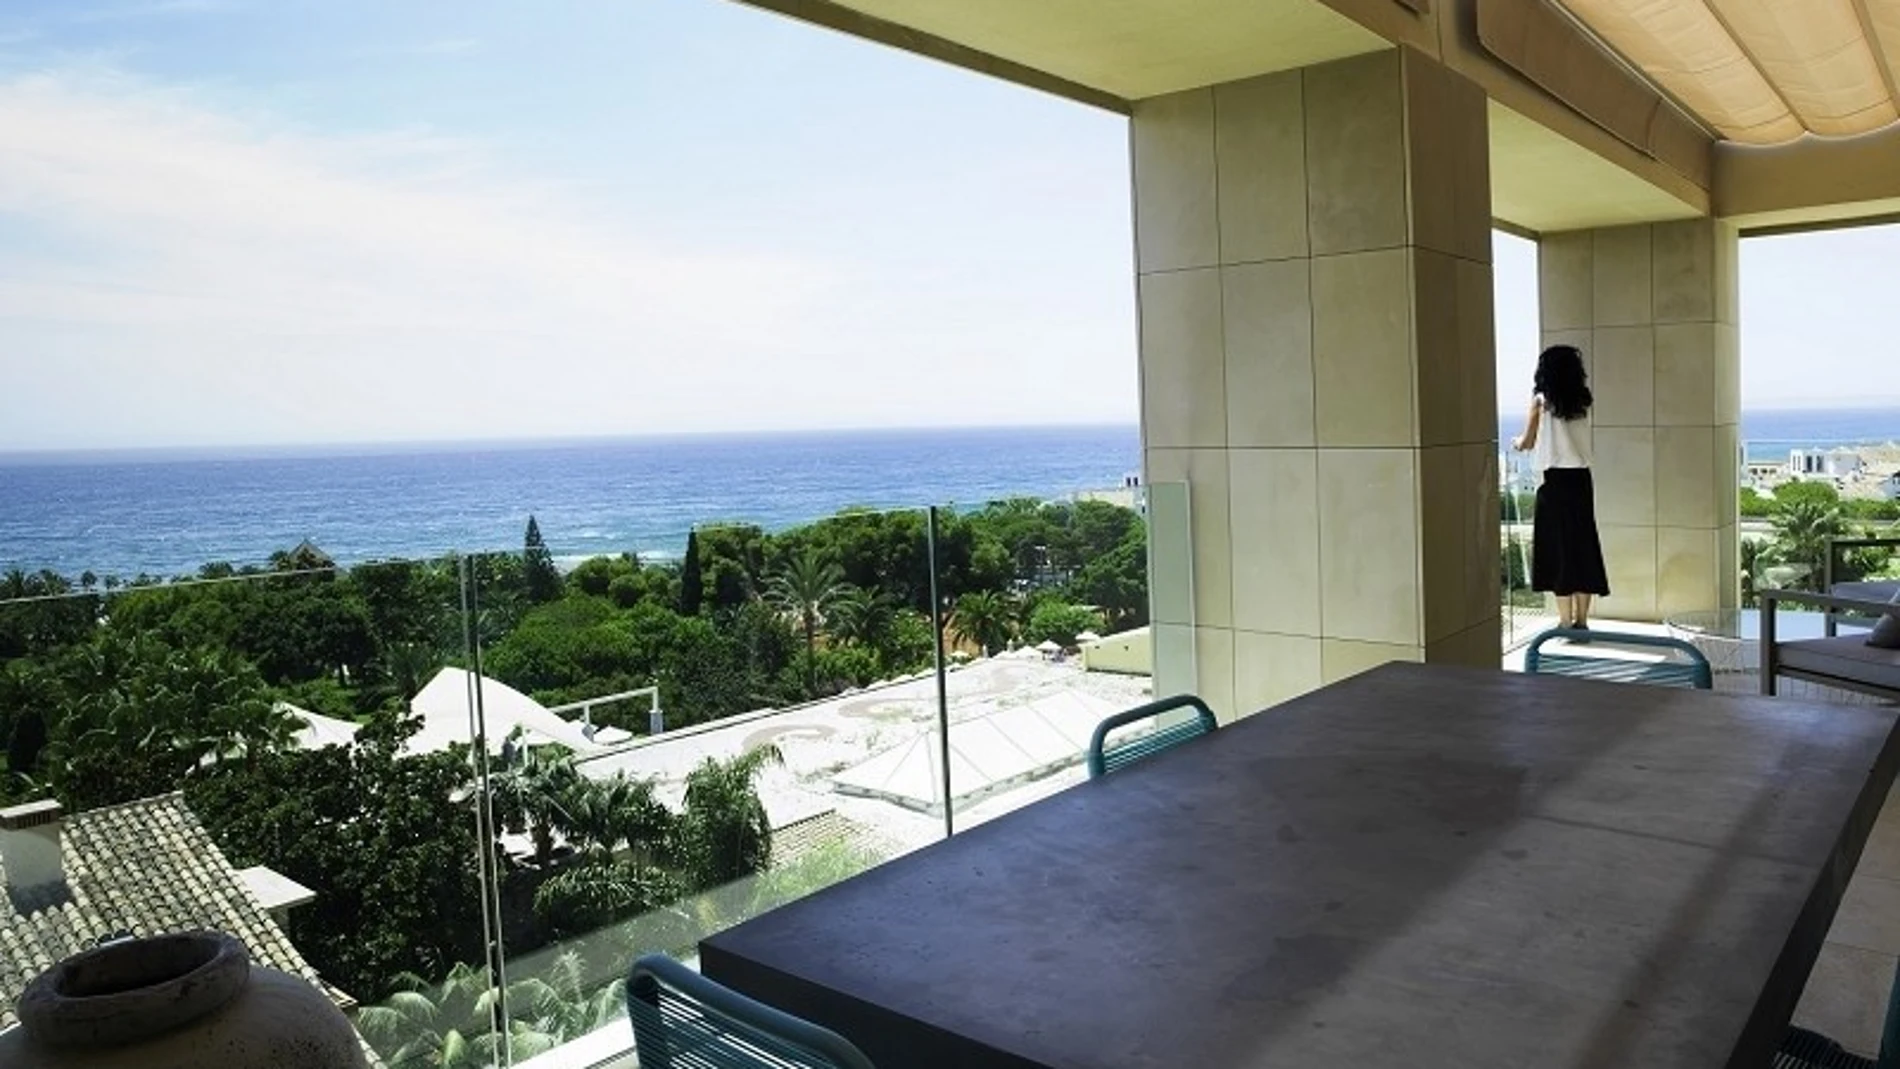 El informe constata que la oferta hotelera de la Costa del Sol ha sido líder en valoración media de los usuarios con respecto a los otros destinos competidores / Foto: La Razón